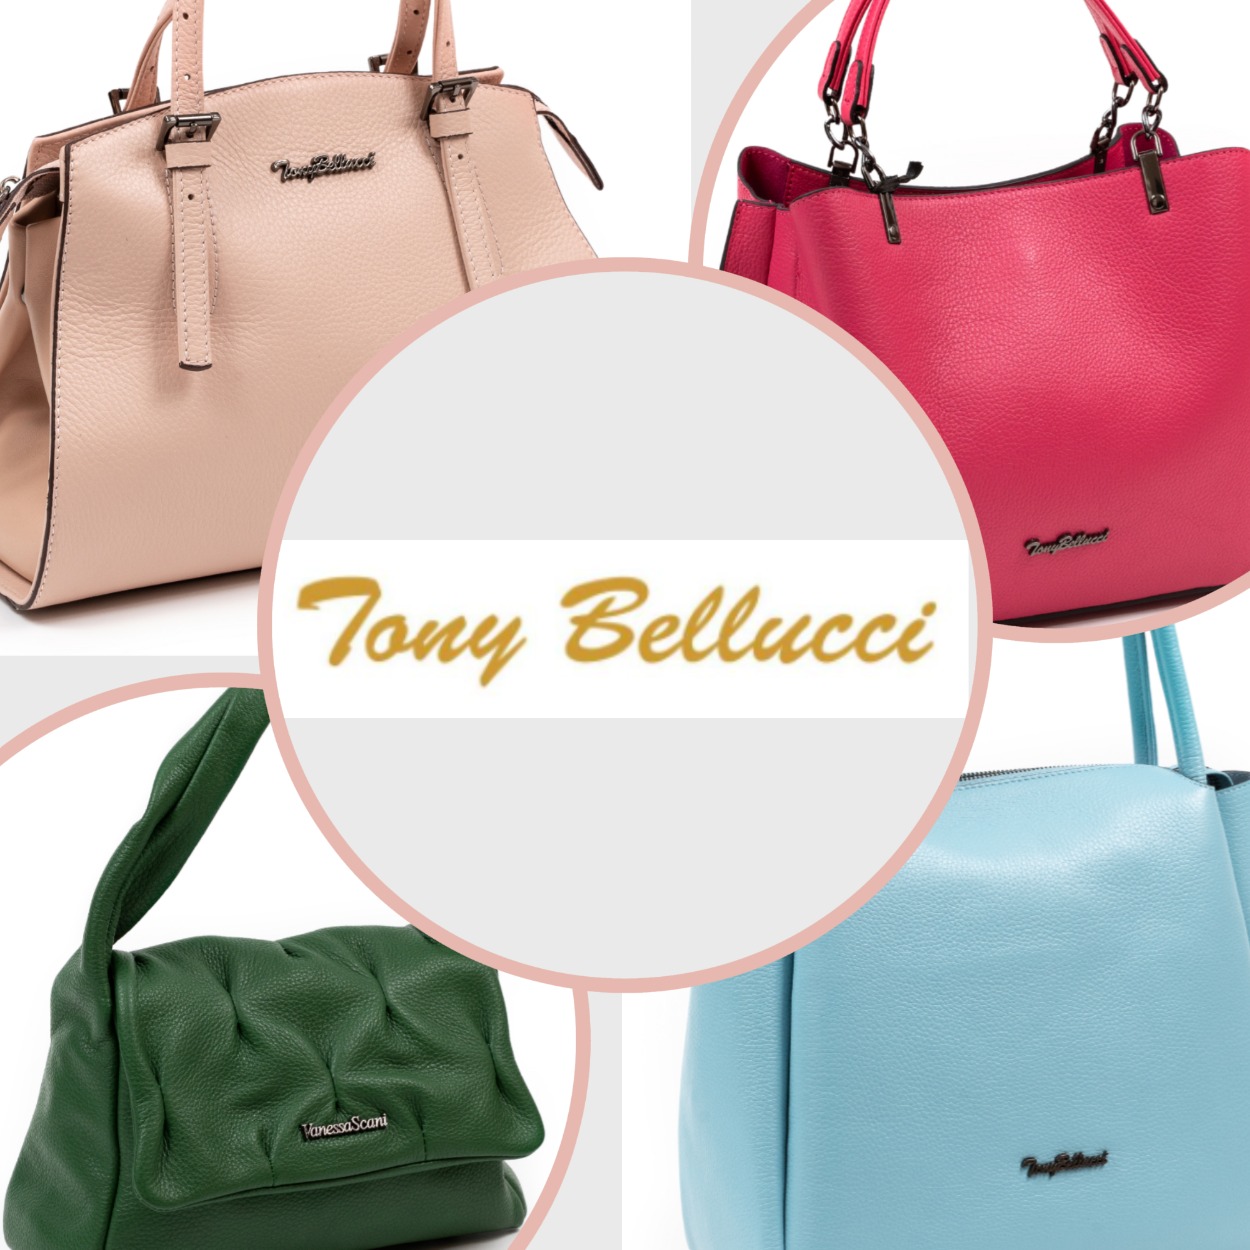 Новый ассортимент - премиум-сумки Tony Bellucci!